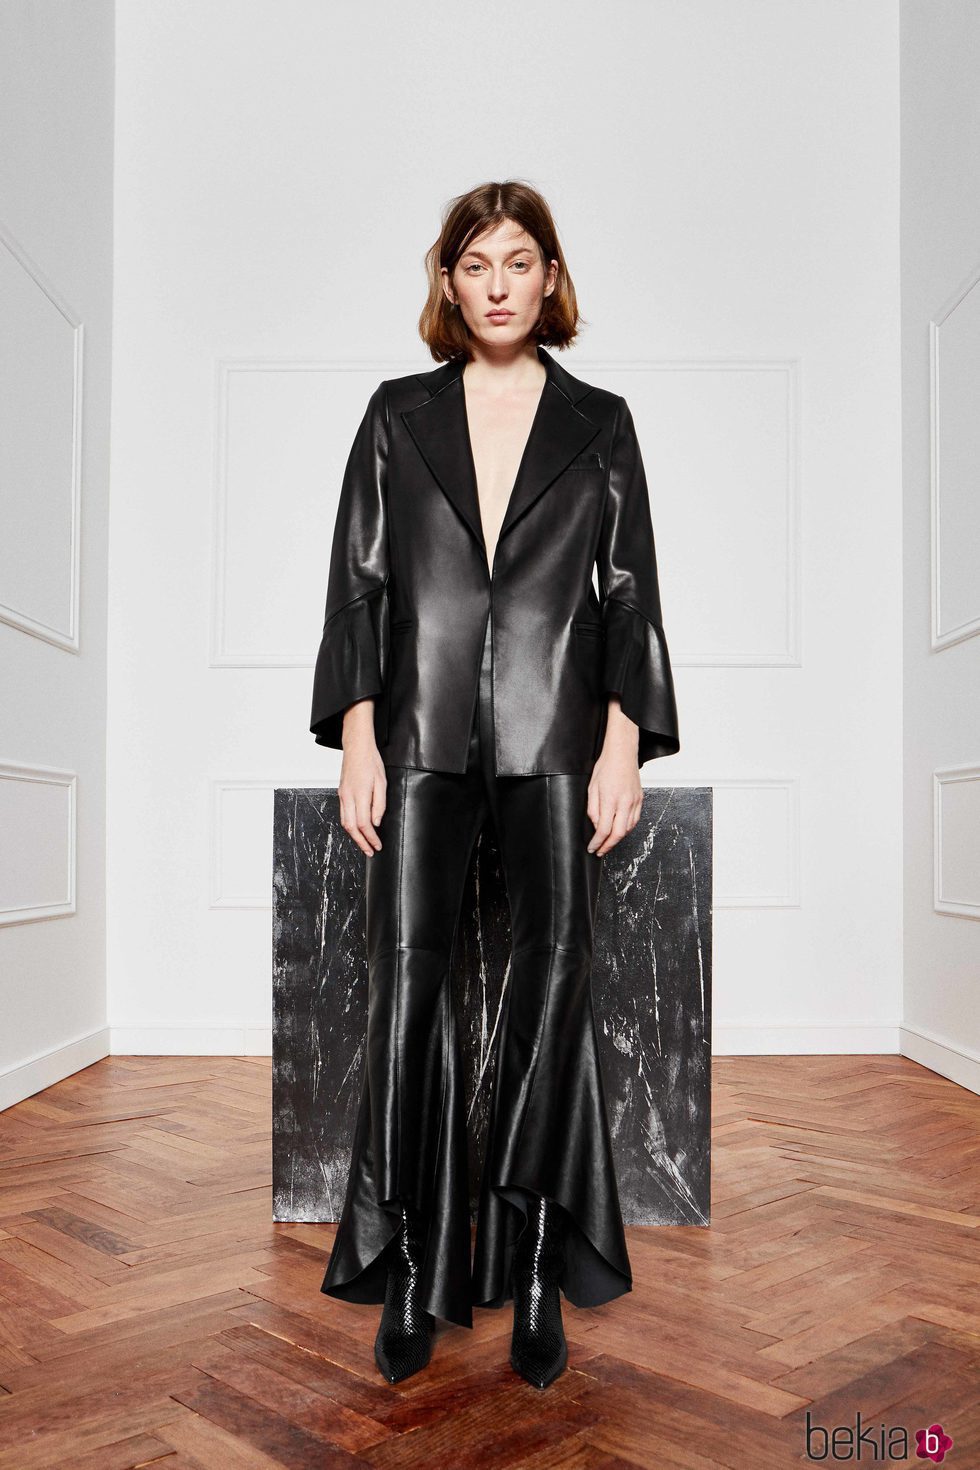 Traje de chaqueta de color negro de Uterqüe colección 'Atelier 2017'